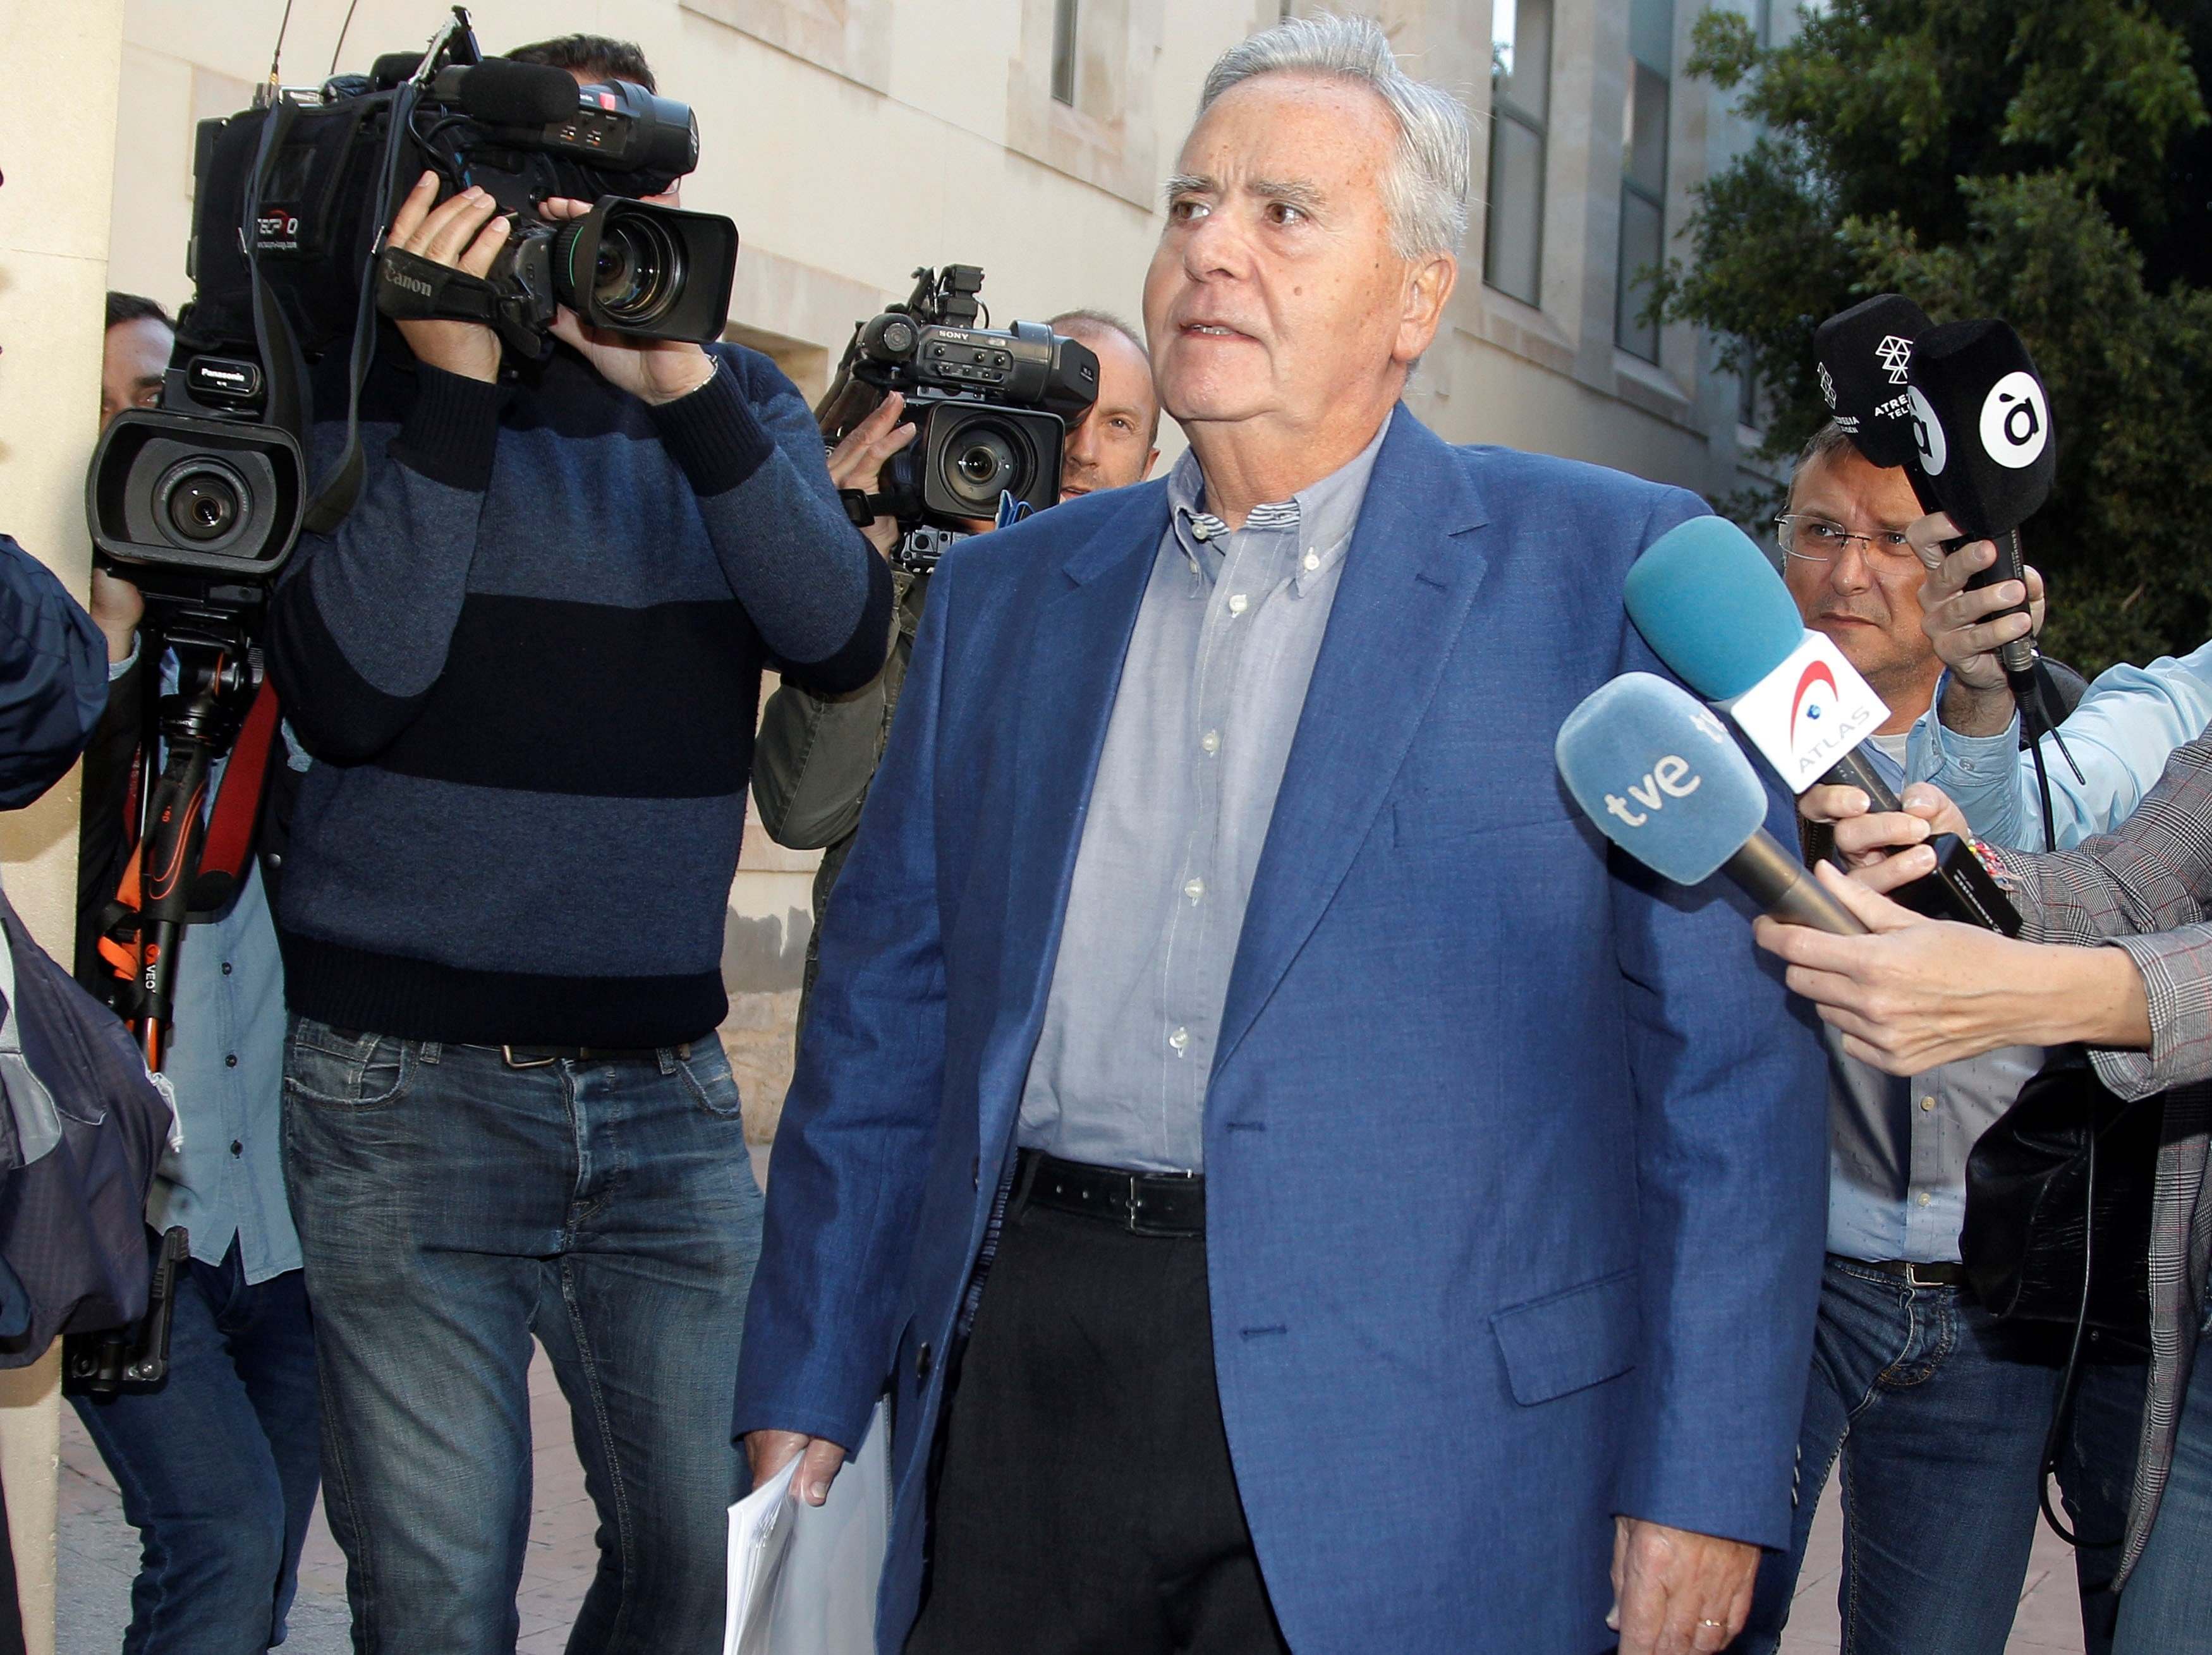 L'exalcalde d'Alacant, Díaz Alperi, jutjat per presumpte frau fiscal